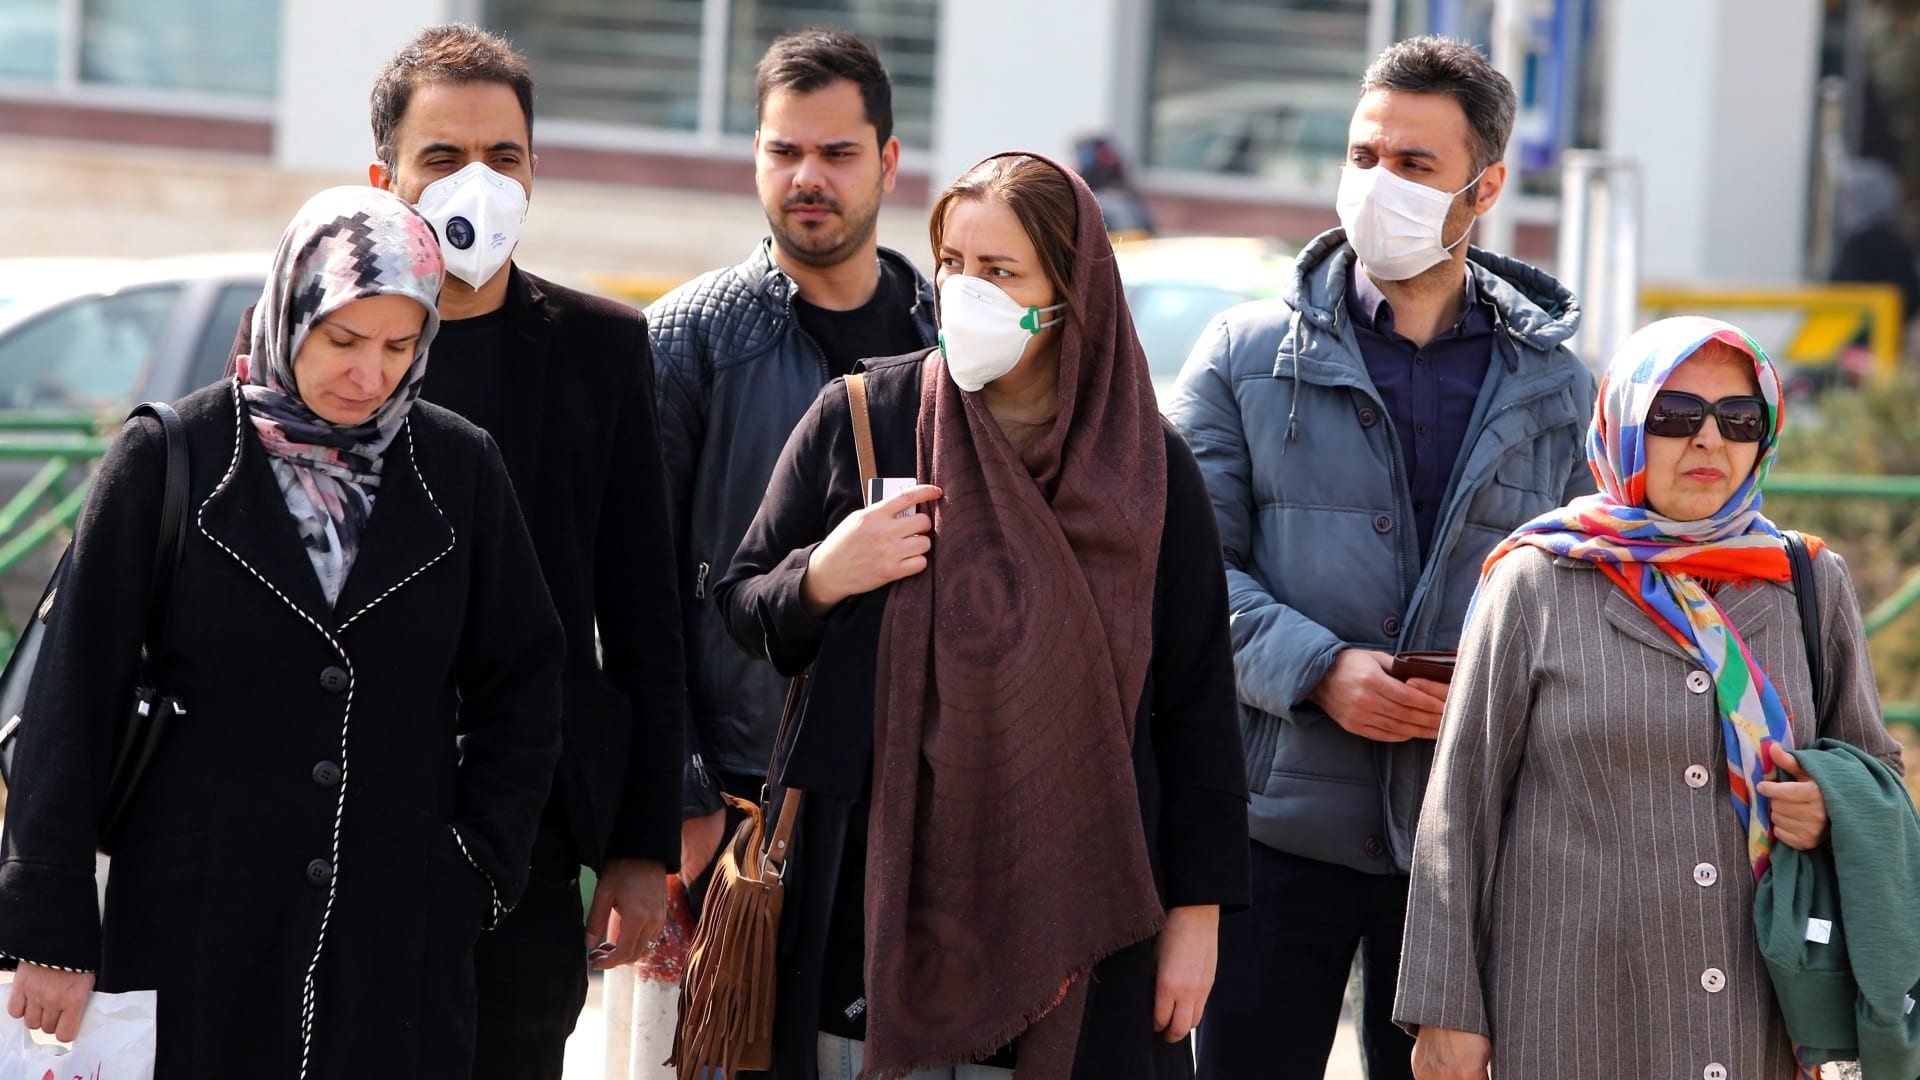 إصابات فيروس كورونا في إيطاليا الأكبر خارج آسيا.. والسلطات تبحث عن "المريض صفر"